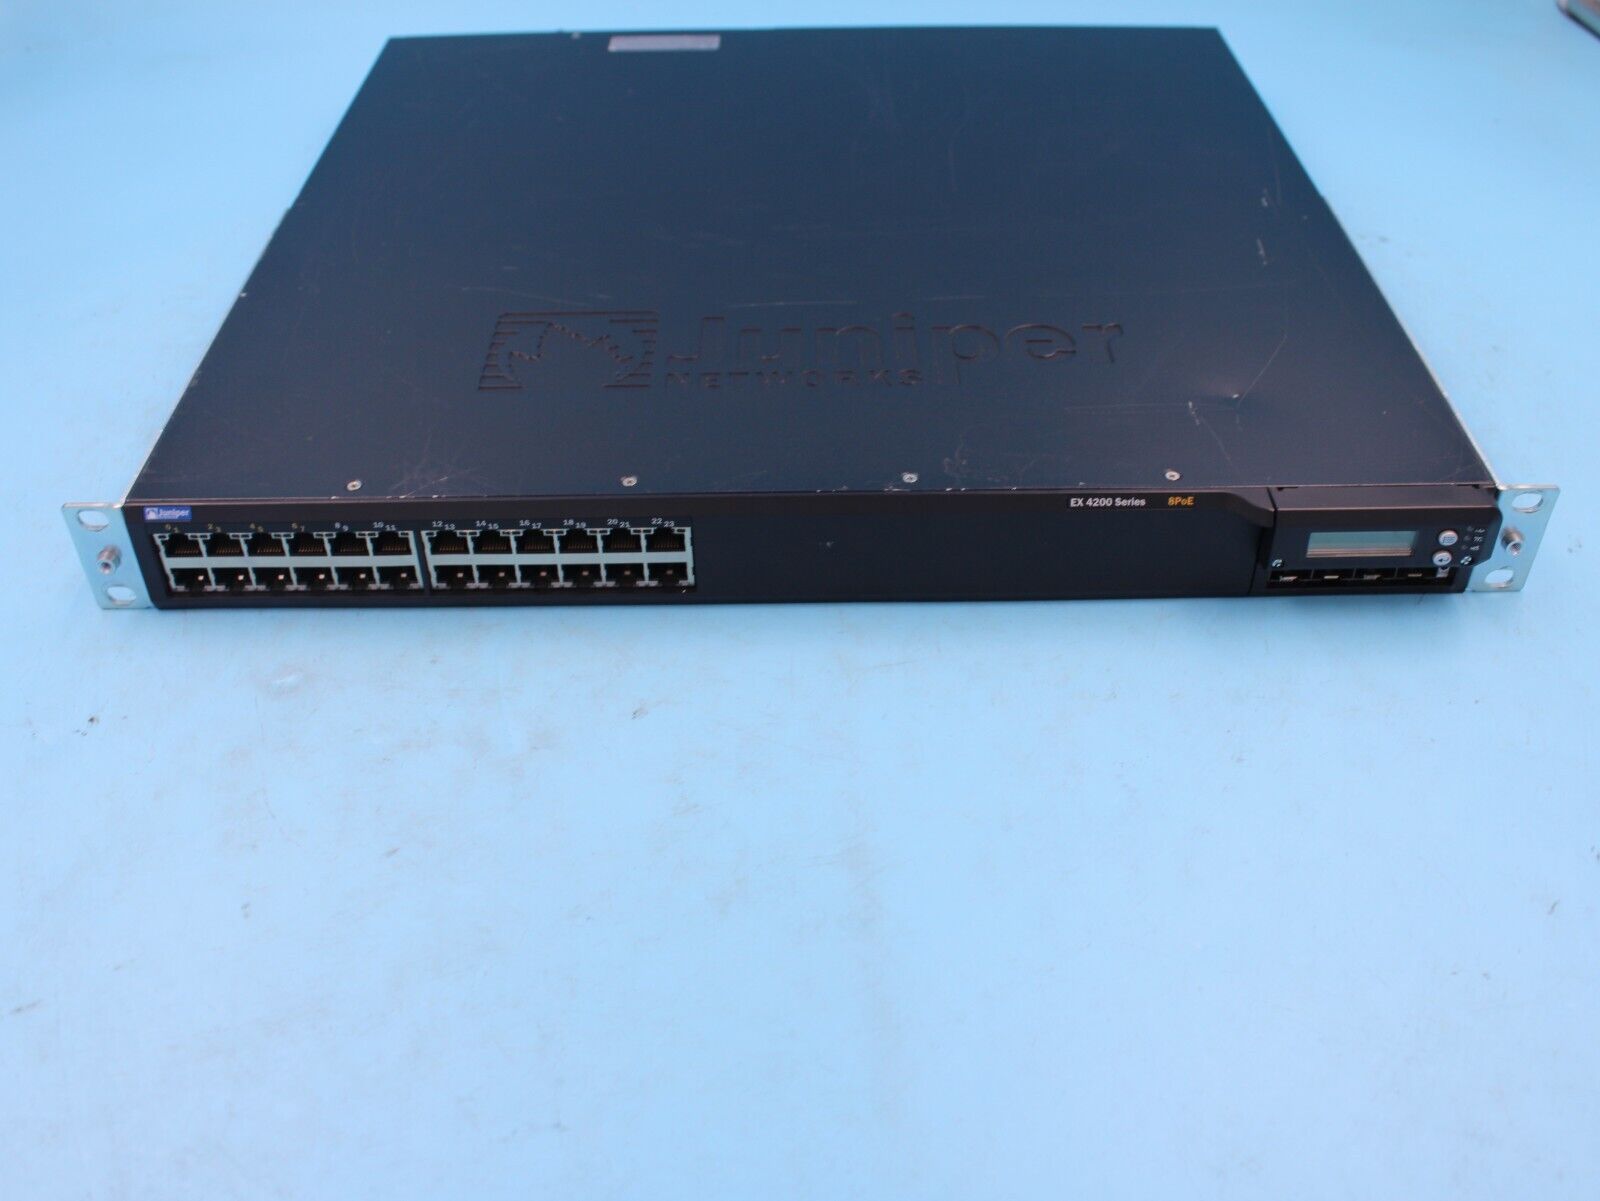 Juniper EX 4200 EX4200-24T PoE Managed Gigabit Ethernet Switch TESTED